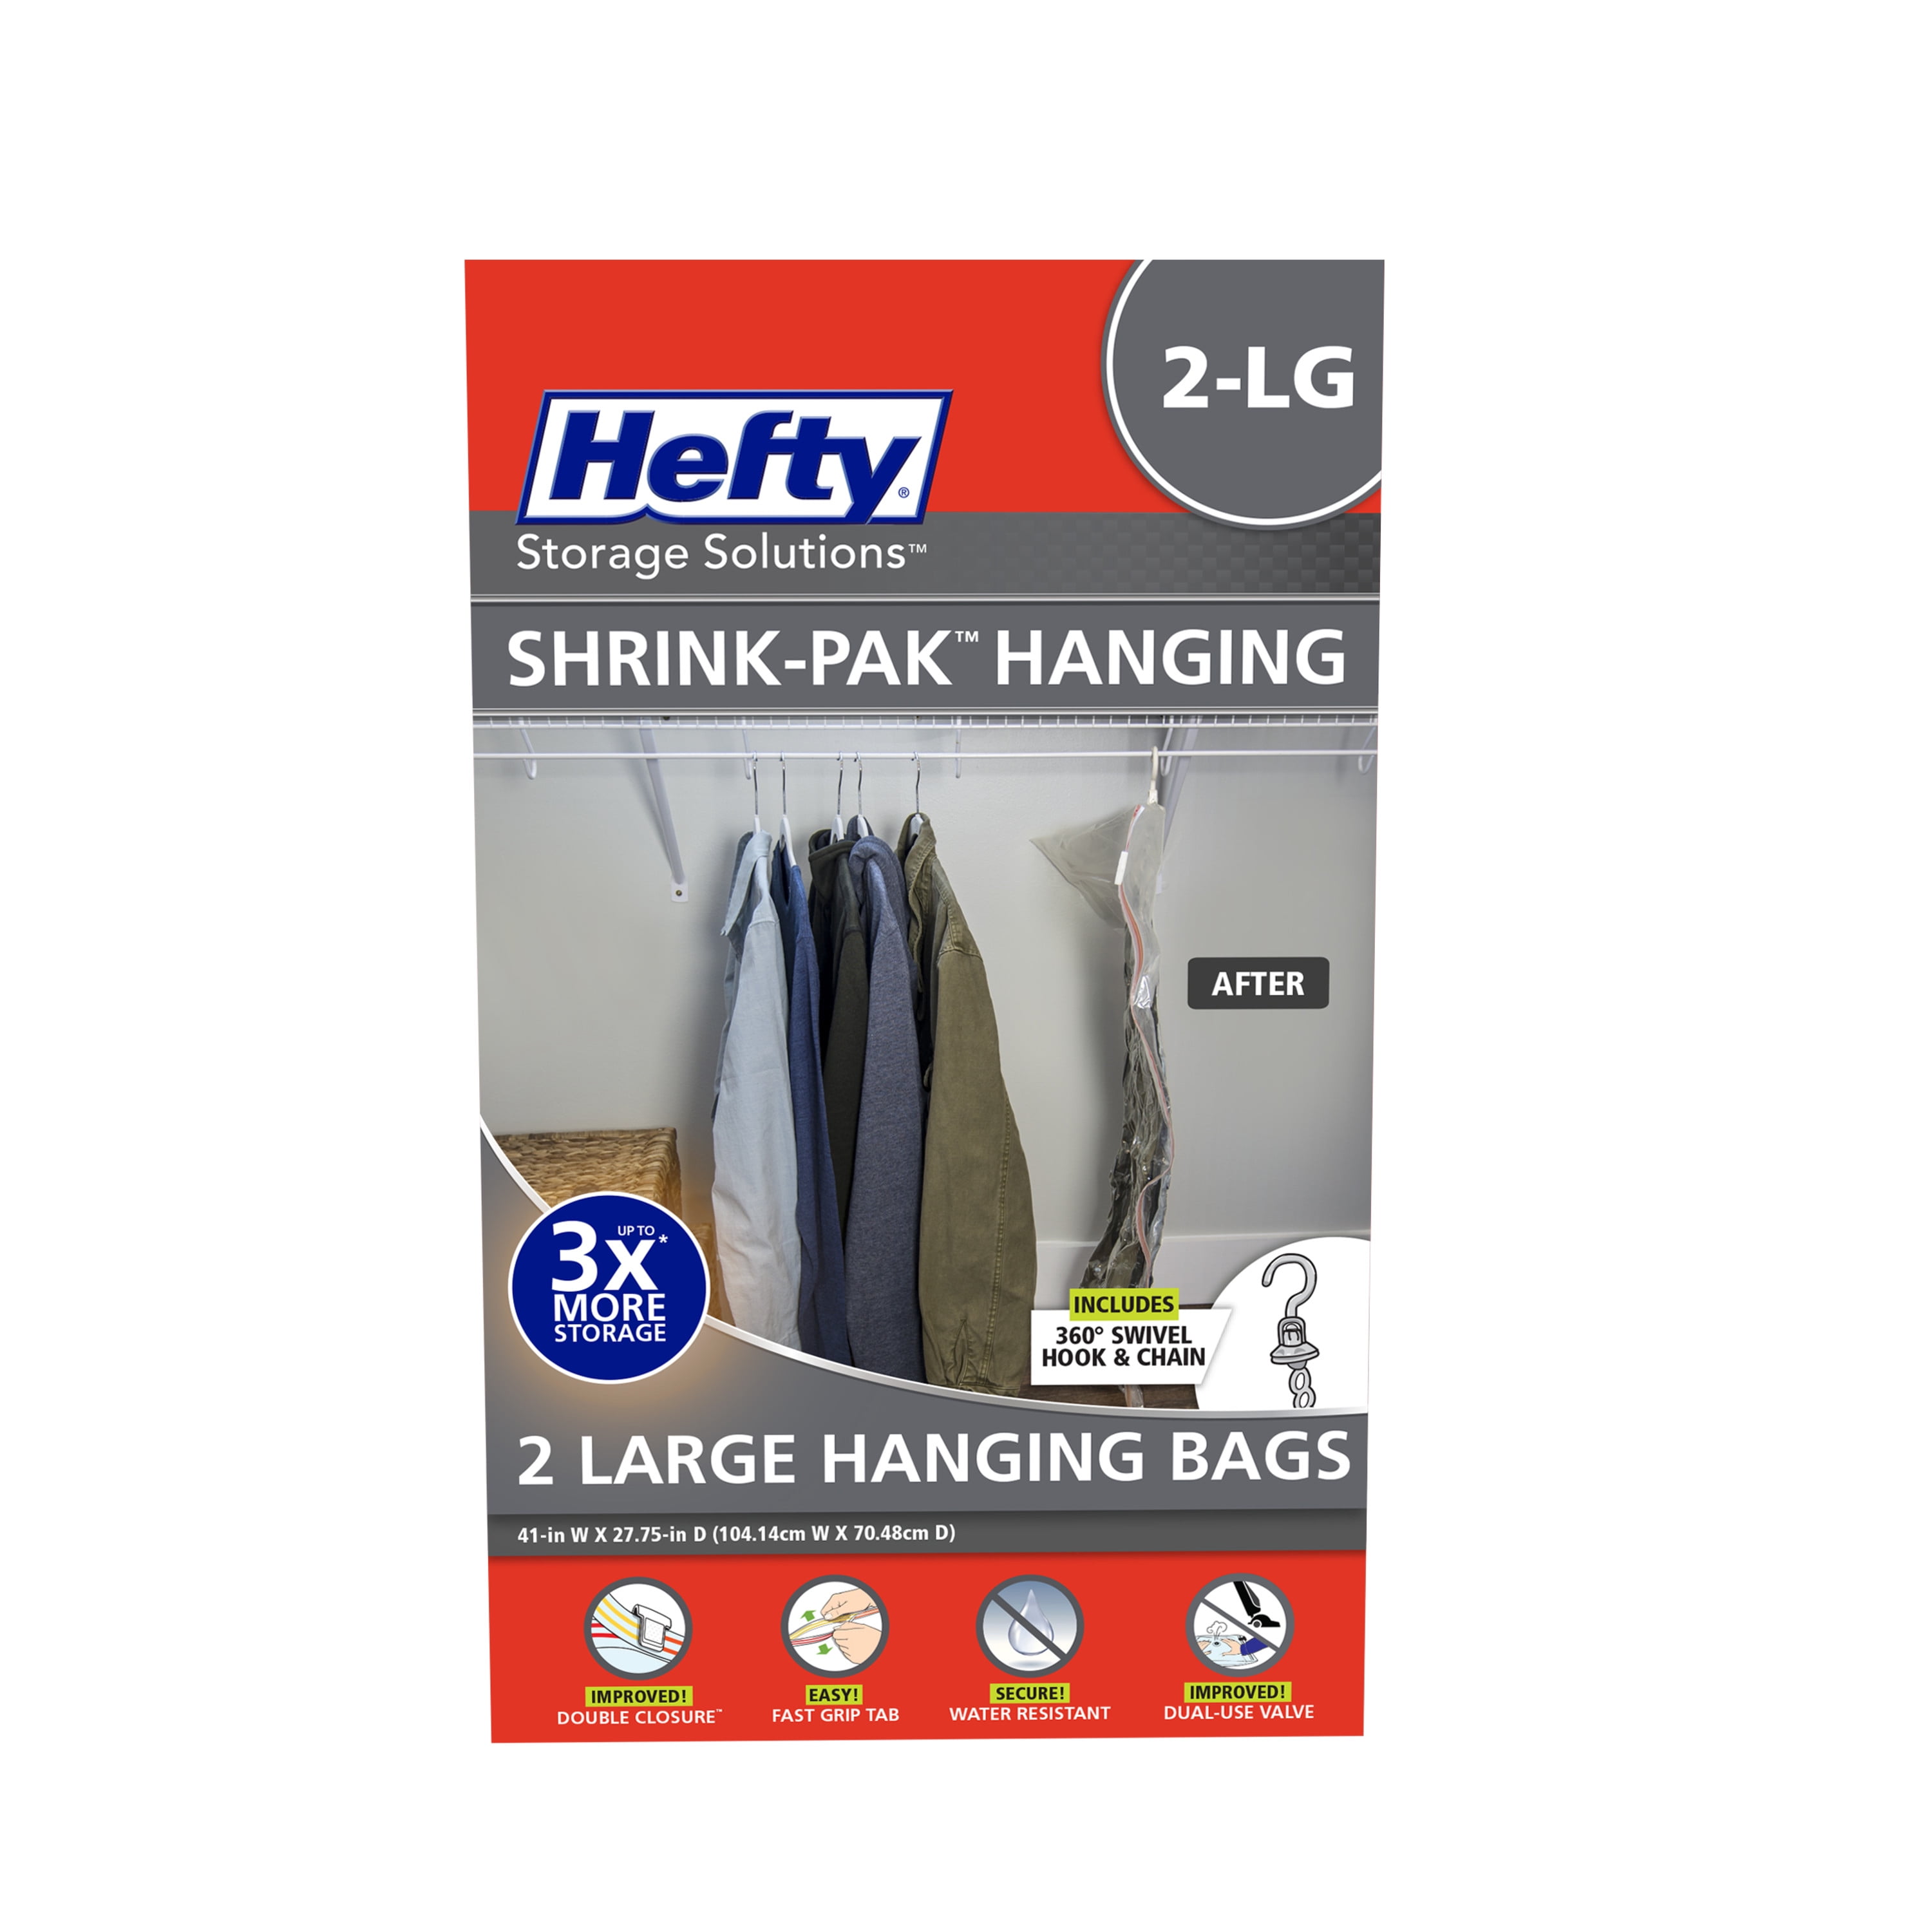 Hefty Shrink-Pak 3 Large Heavy Duty Bags, Clear